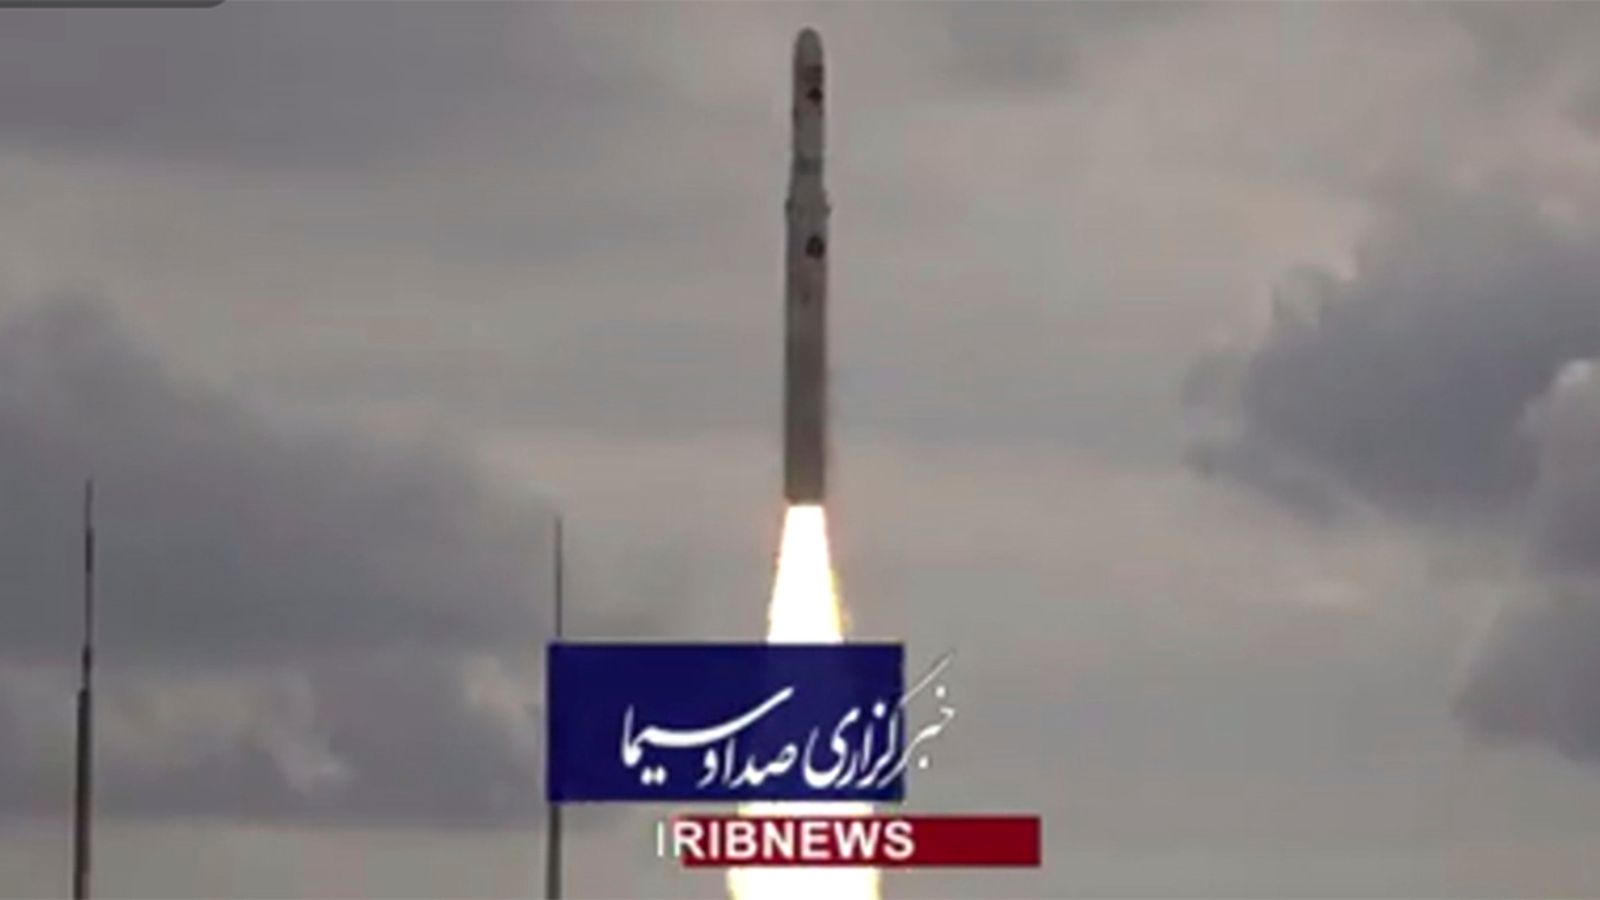 امريكا تصف اختبار ايران لصاروخ جديد بالقمر الصناعي بأنه “غير مفيد ومزعزع للاستقرار” |  اخبار العالم